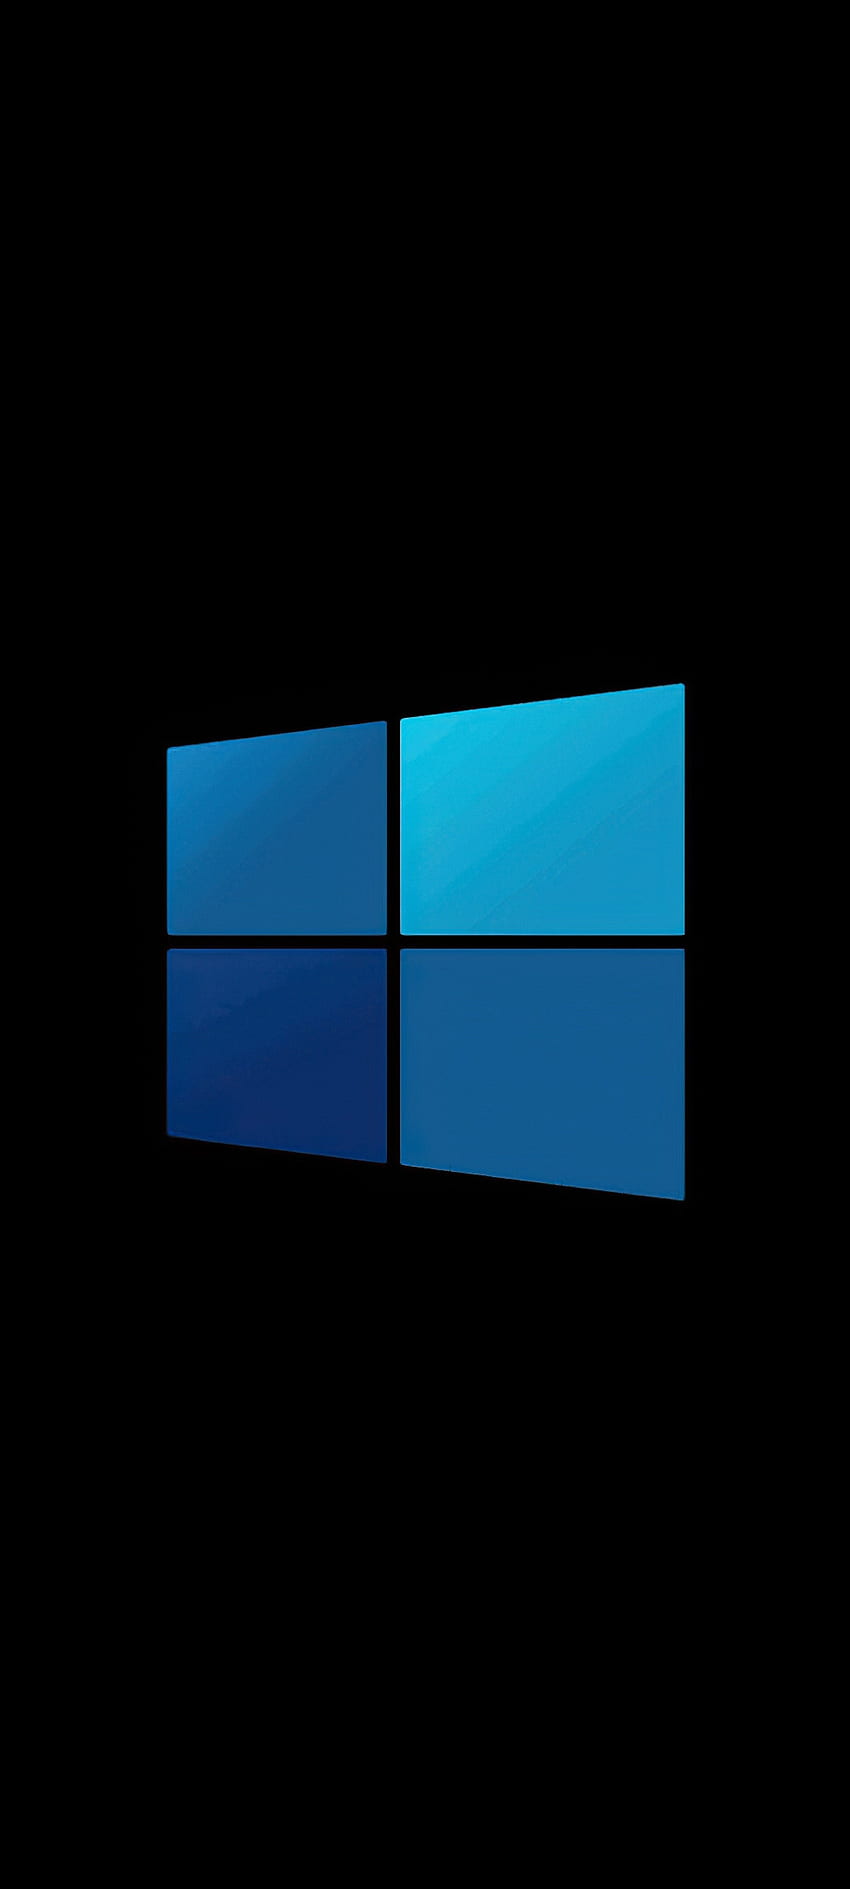 Niebieskie logo systemu Windows, elektryczny niebieski, amoled, design, czarny, oled, technologia, , microsoft Tapeta na telefon HD